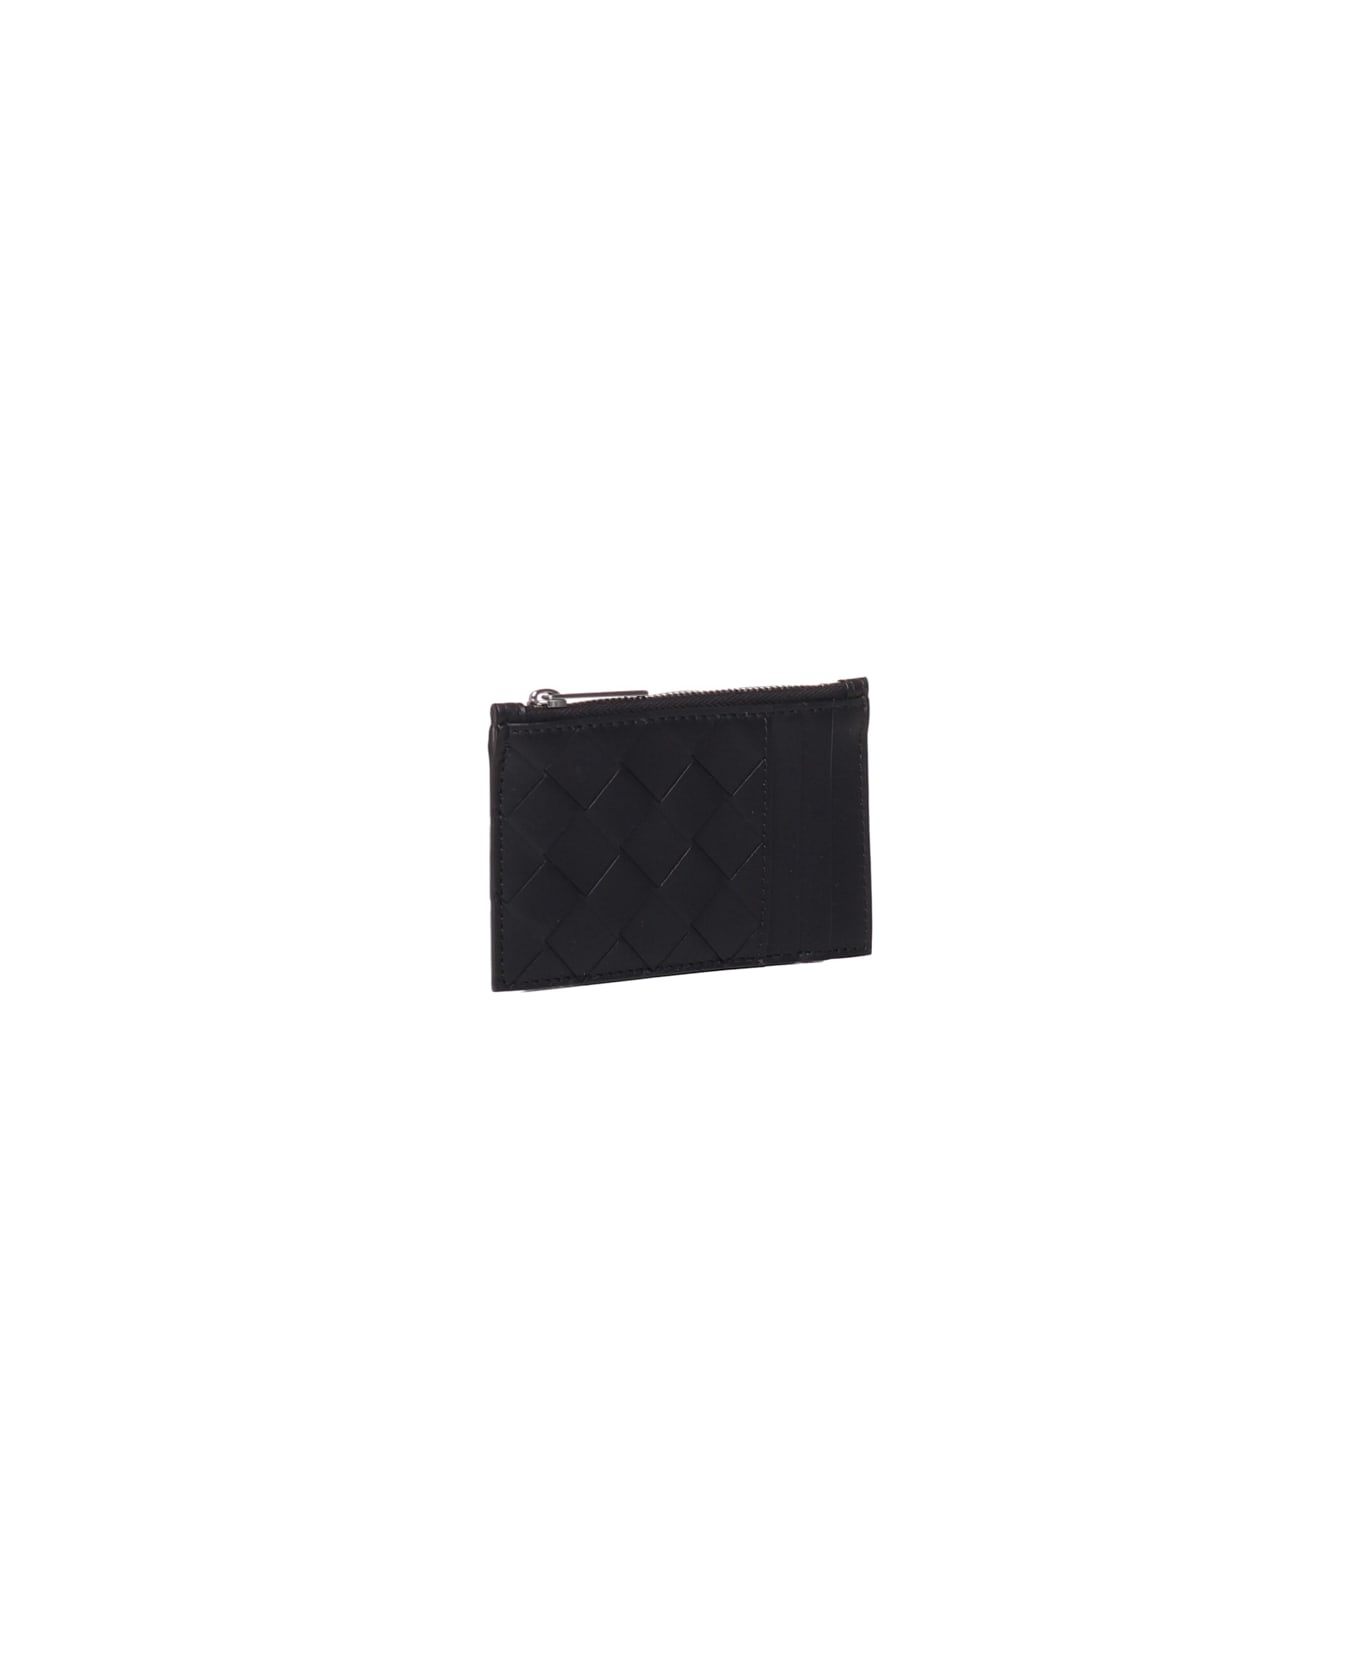 Black Leather Card Holder - 2